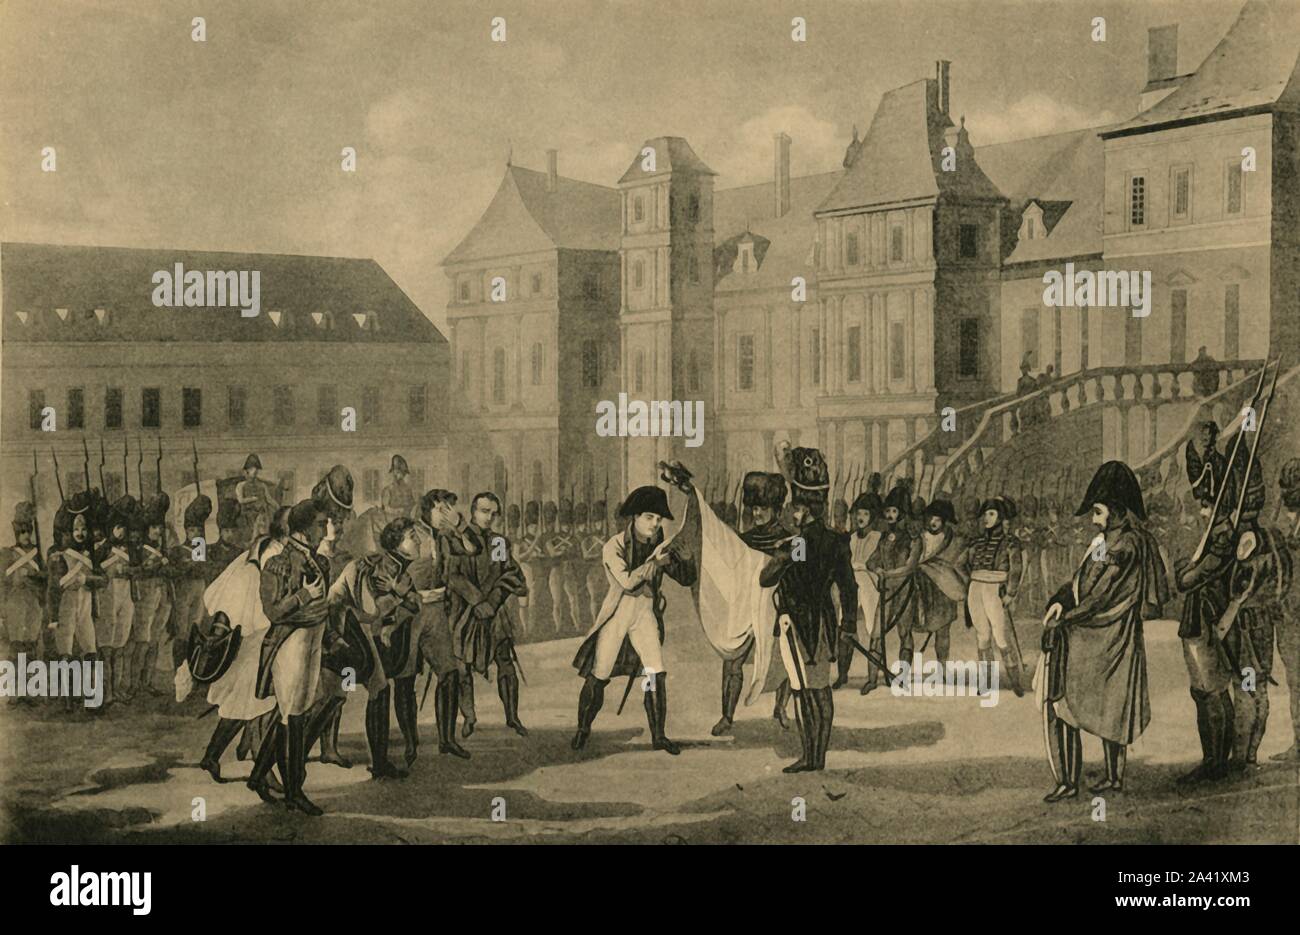 Napoleone in partenza da Fontainebleau, 20 aprile 1814, (1921). 'Les Adieux De L'Empereur un figlio braccio&#xe9;e &#xe0; Fontainebleau'. L'imperatore Napoleone, in piedi al centro del cortile del Palazzo di Fontainebleau, dice addio alla sua vecchia guardia e afferra una bandiera di battaglia a lui presentati da due soldati. La sconfitta nella battaglia di Lipsia e la successiva invasione della Francia dagli Alleati culminò nel Napoleone di abdicazione il 11 aprile. Con il Trattato di Fontainebleau fu esiliato e concesso la sovranità dell'isola d'Elba. Incisione fatta nel 1815. Da "Napoleone", da Raymon Foto Stock